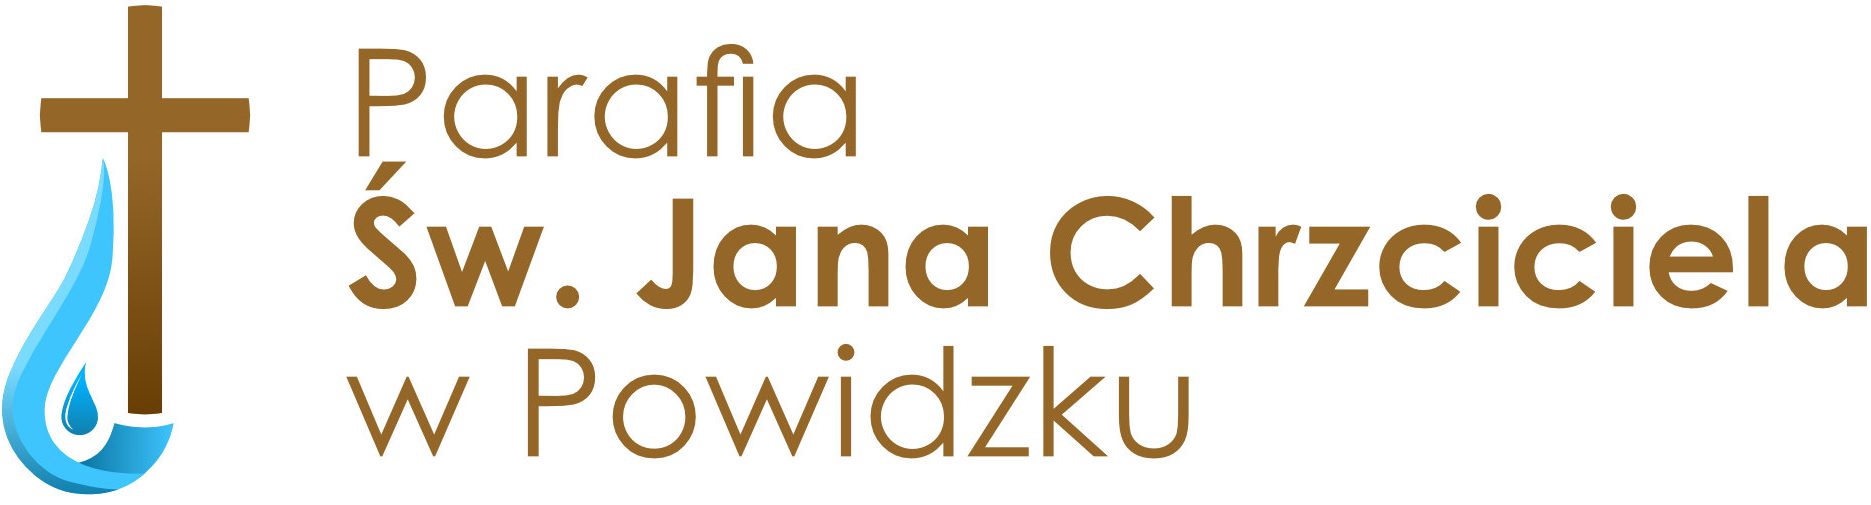 Parafia św. Jana Chrzciciela w Powidzku